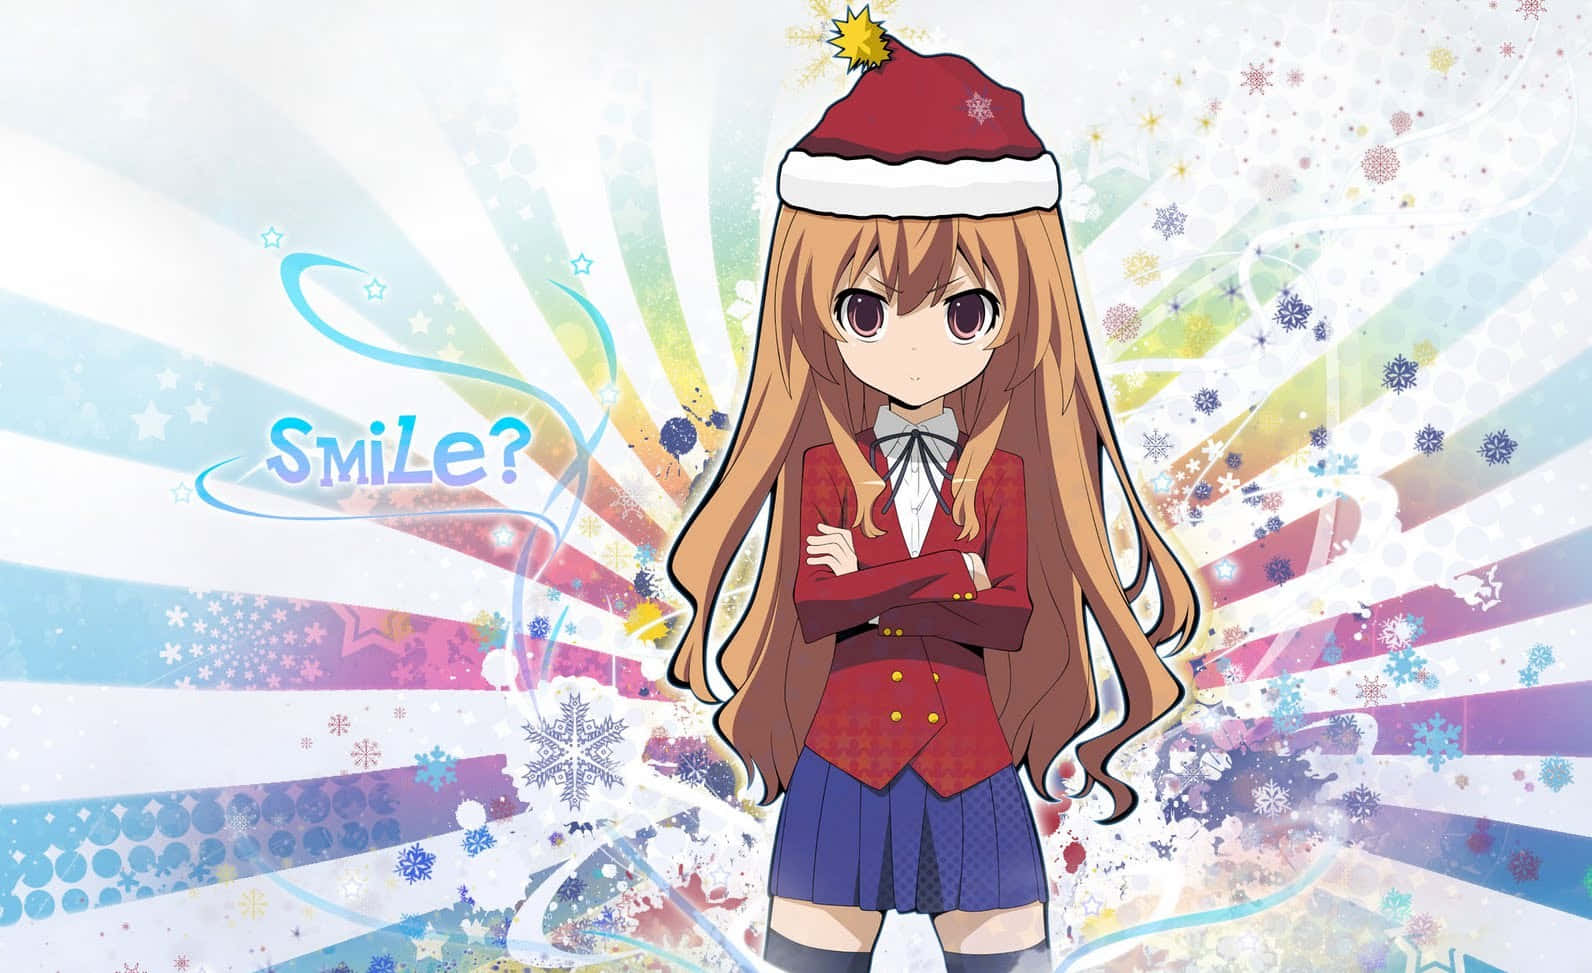 Verbreiteweihnachtsstimmung Mit Dieser Festlichen Anime-weihnachtsszene!